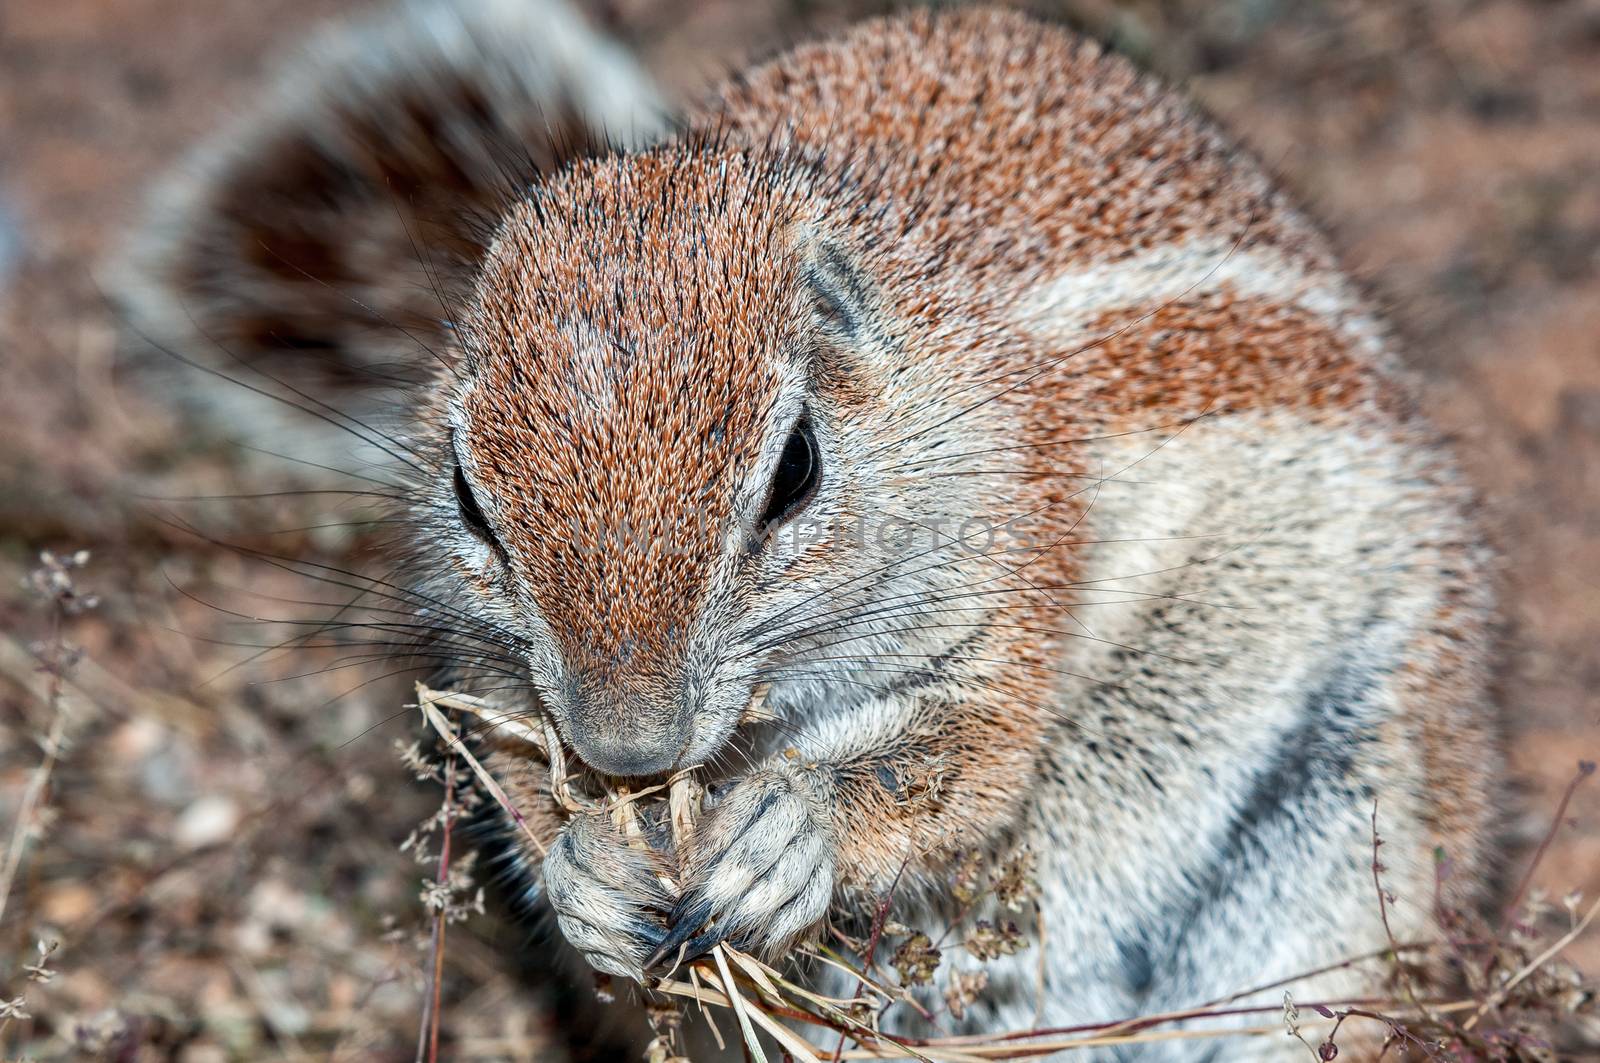 A cape ground squirrel, Xerus inauris, in the arid Kgalagadi